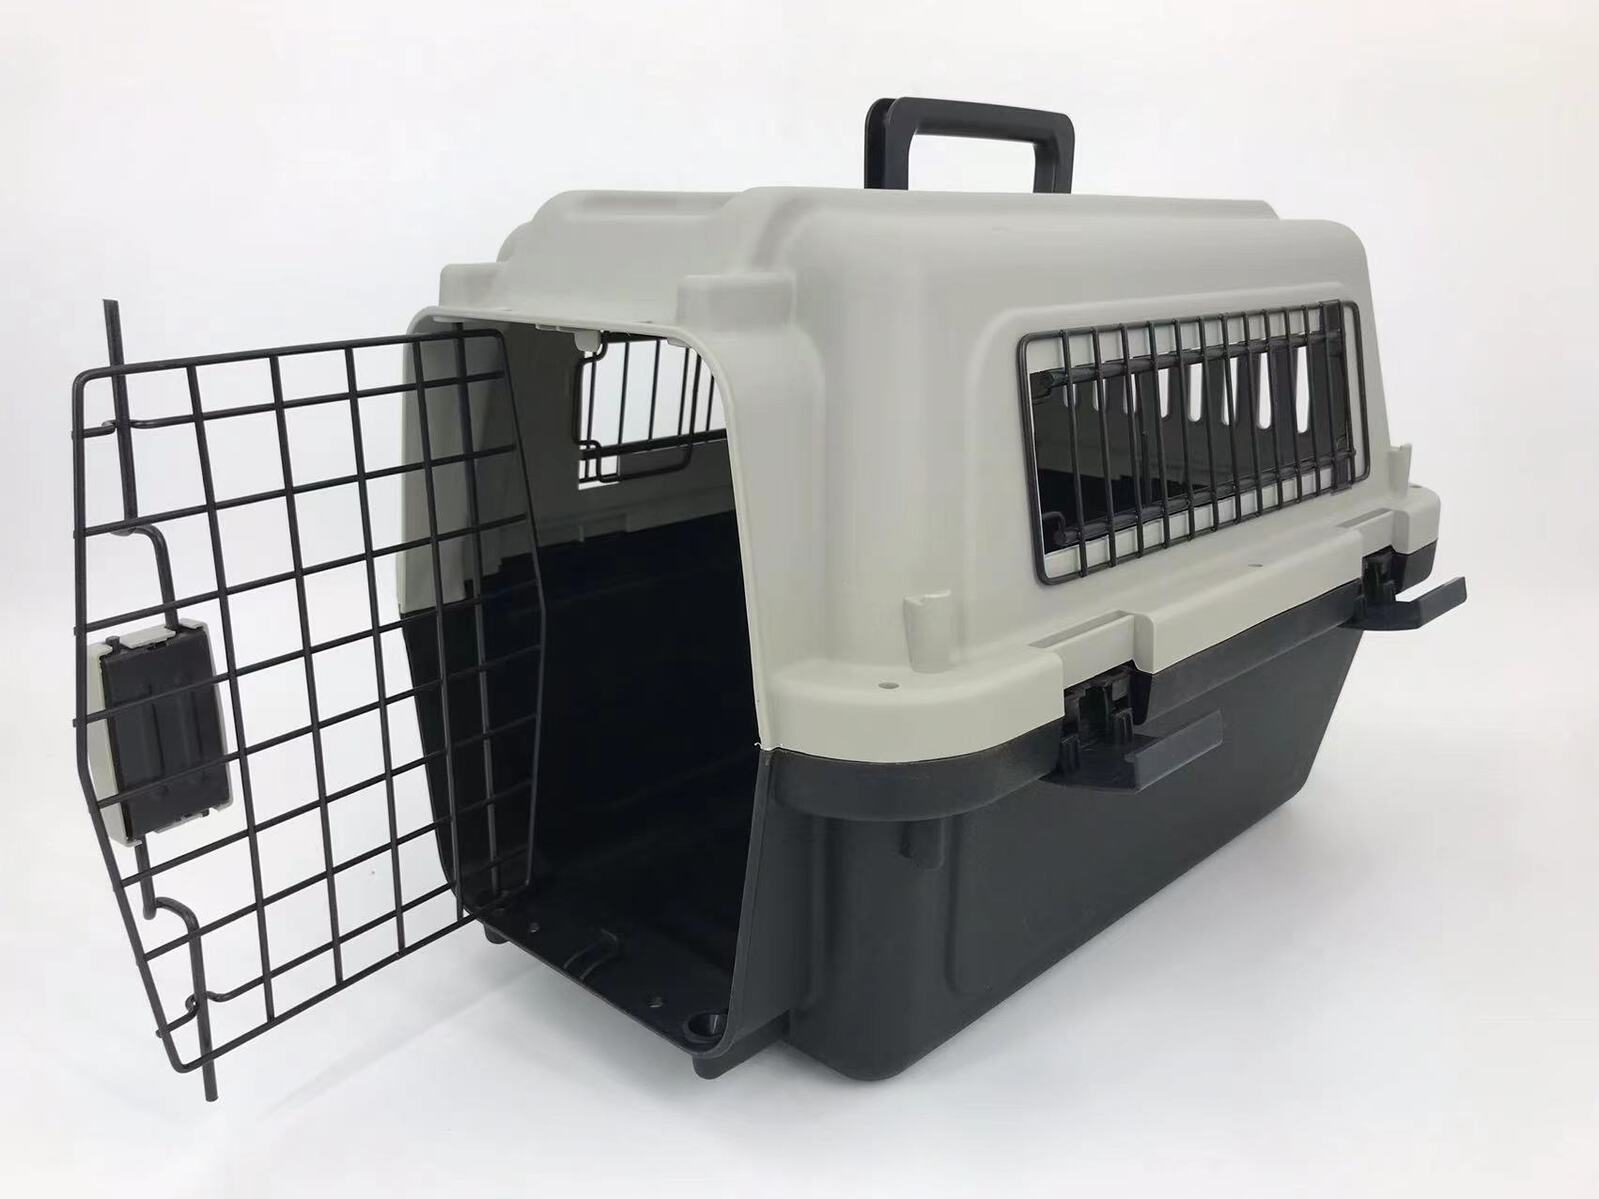 travel bag cage dog